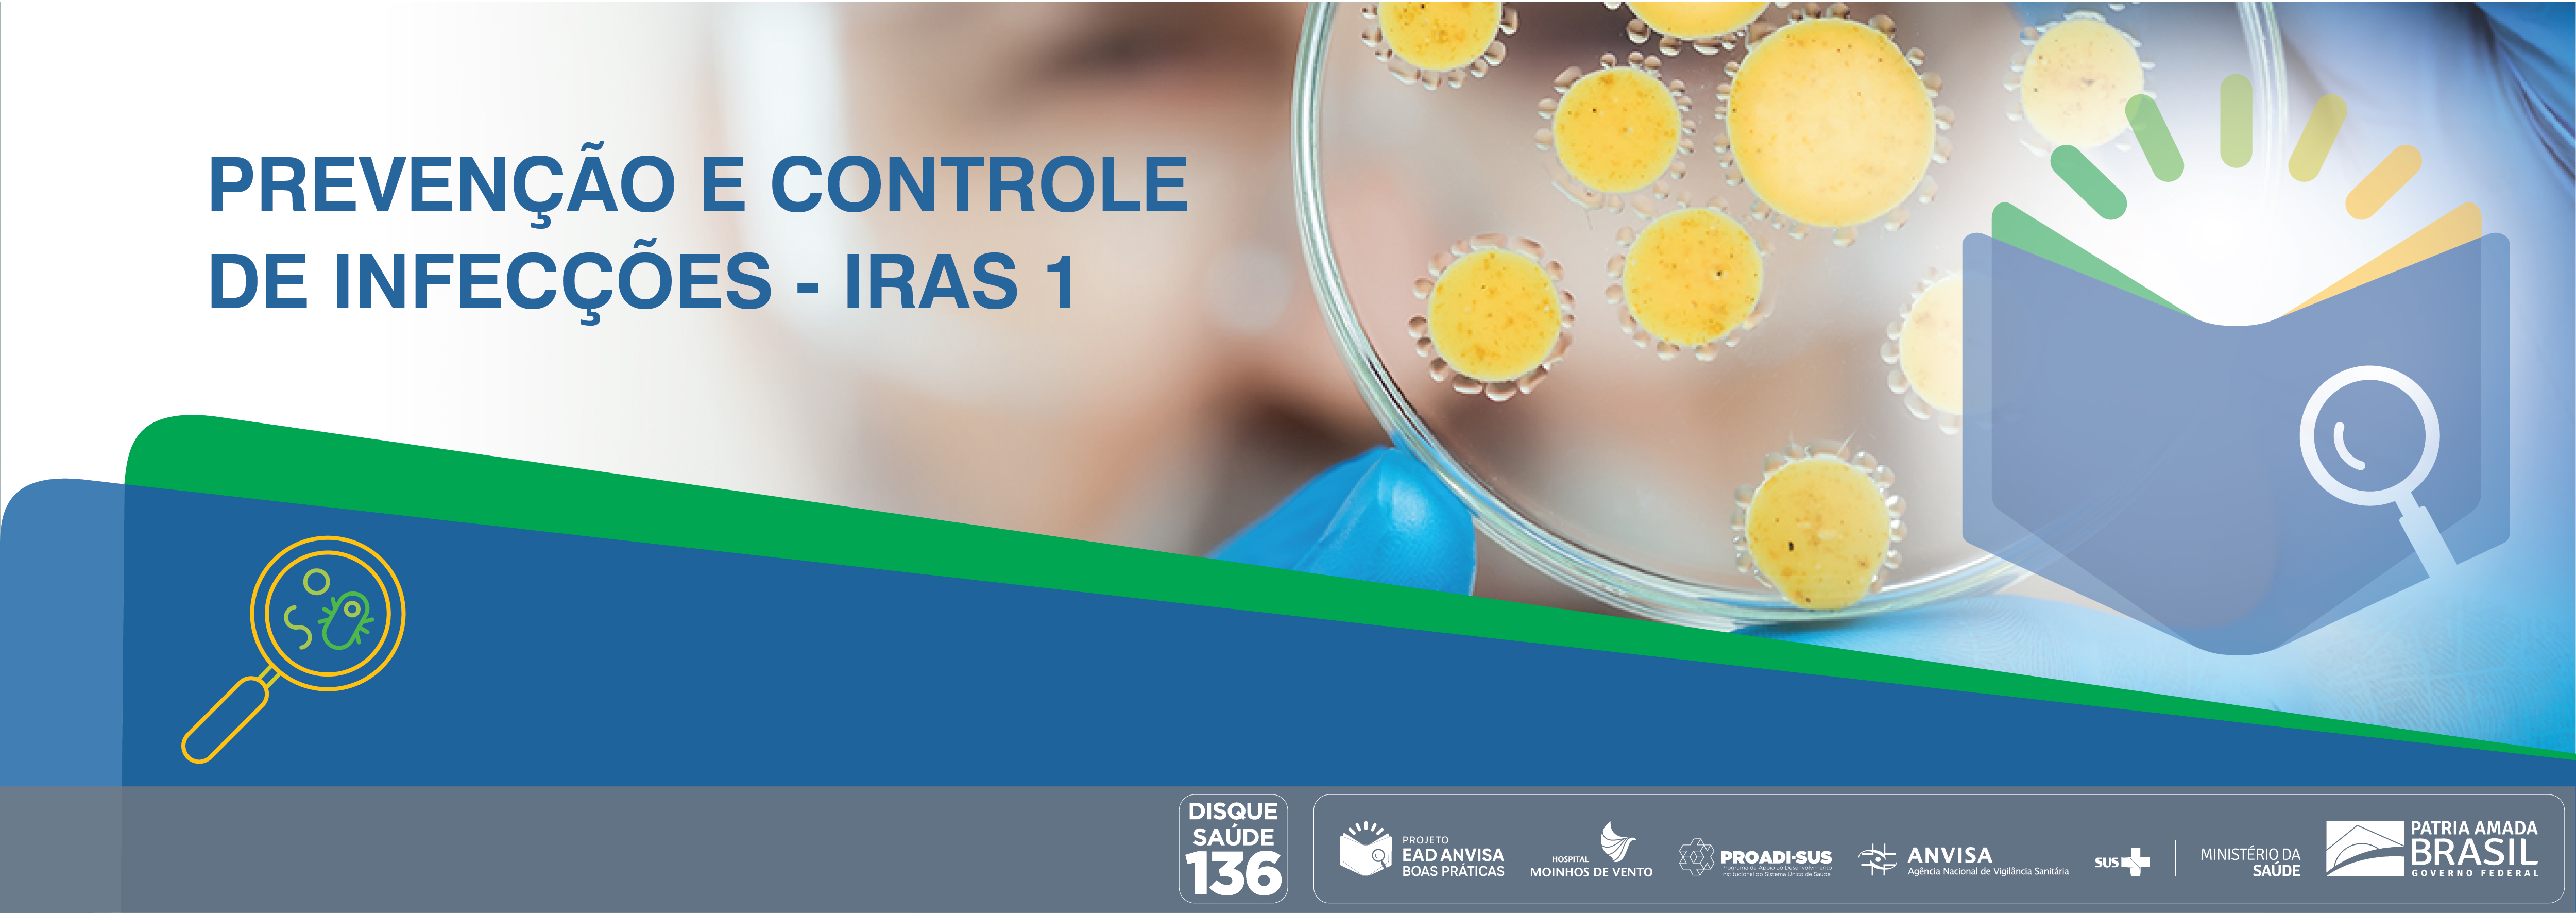 Boas Práticas de Inspeção em Serviços de Saúde com foco nas Ações de Prevenção e Controle das Infecções Relacionadas à Assistência à Saúde e Resistência Microbiana (RM) - Módulo 1 ANVISA_IRAS1_2020_V2